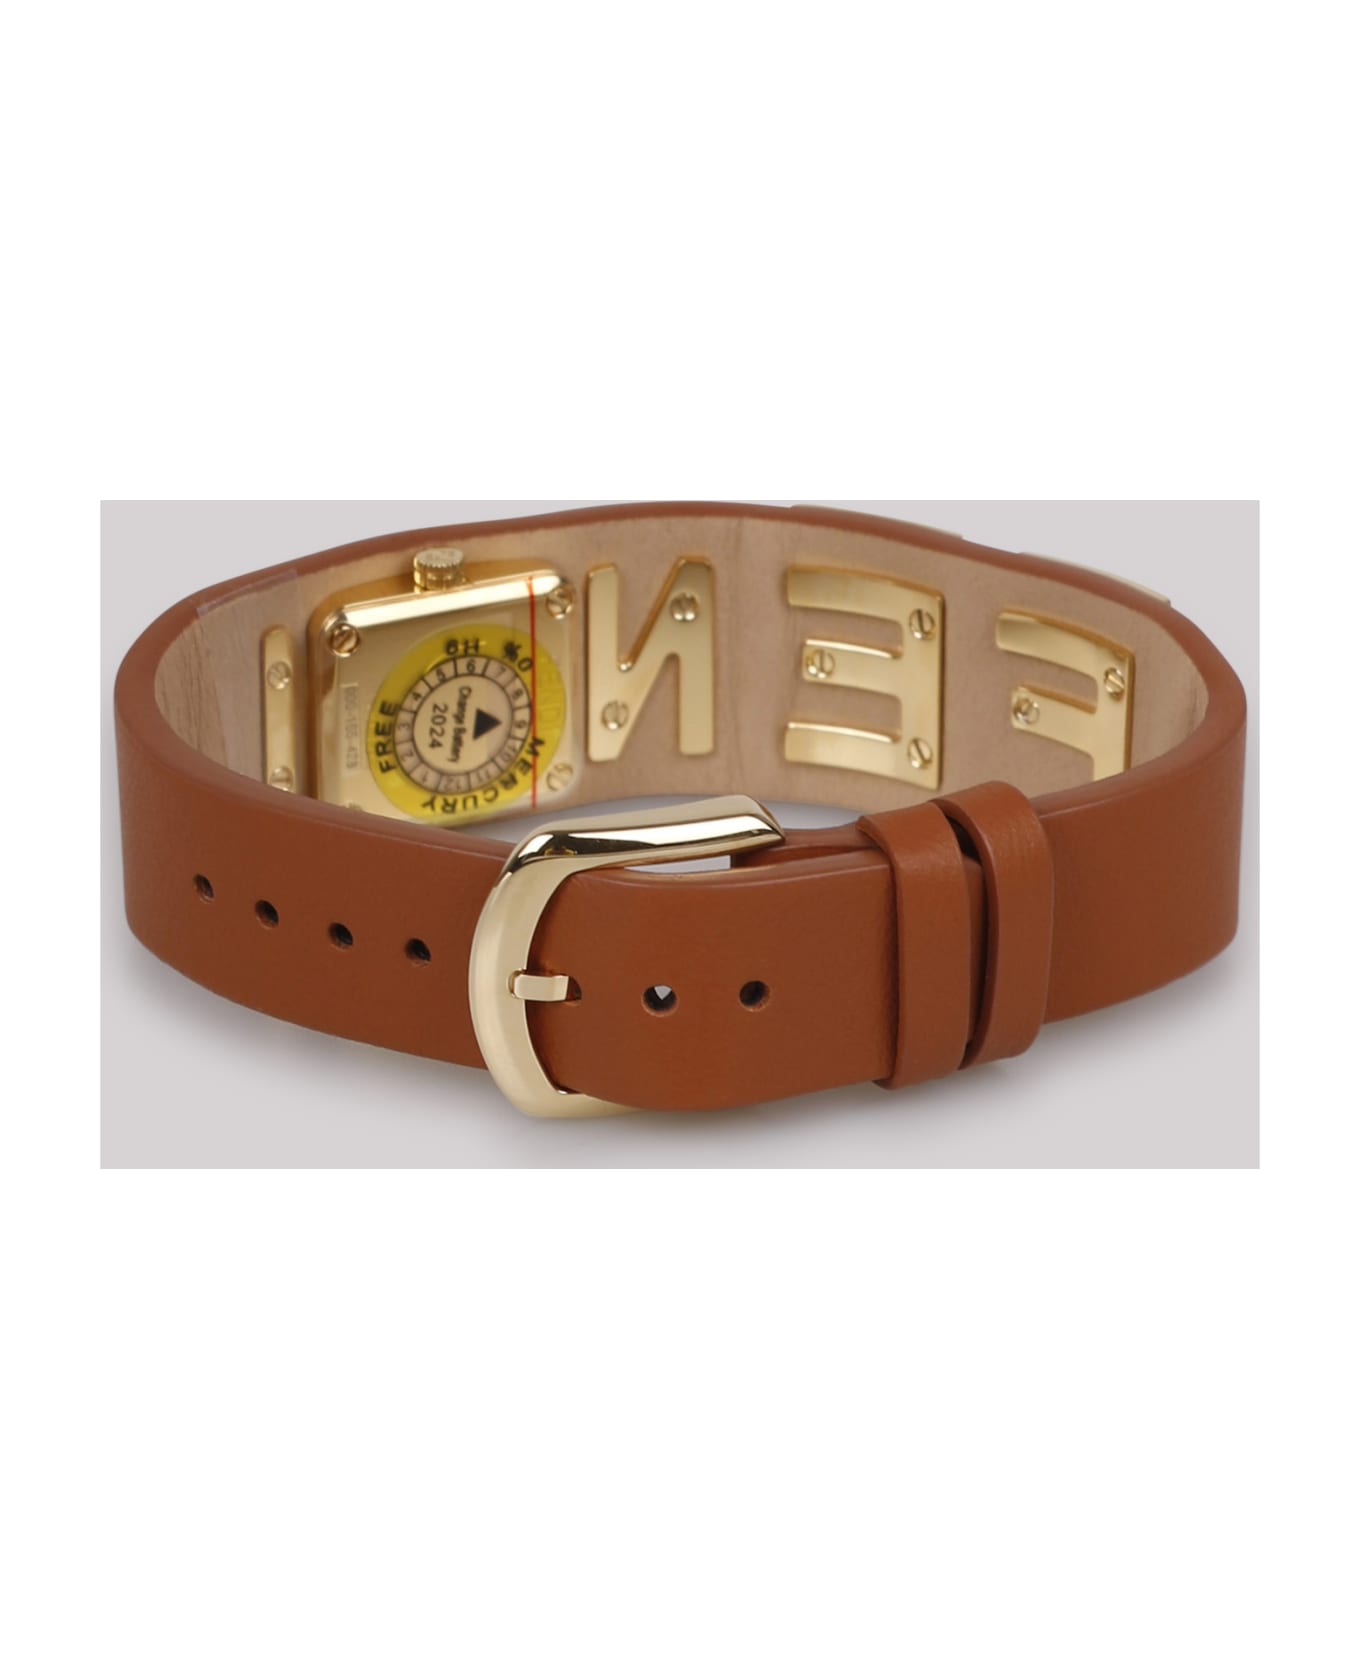 Fendi Bracelet Watch With Fendi Lettering